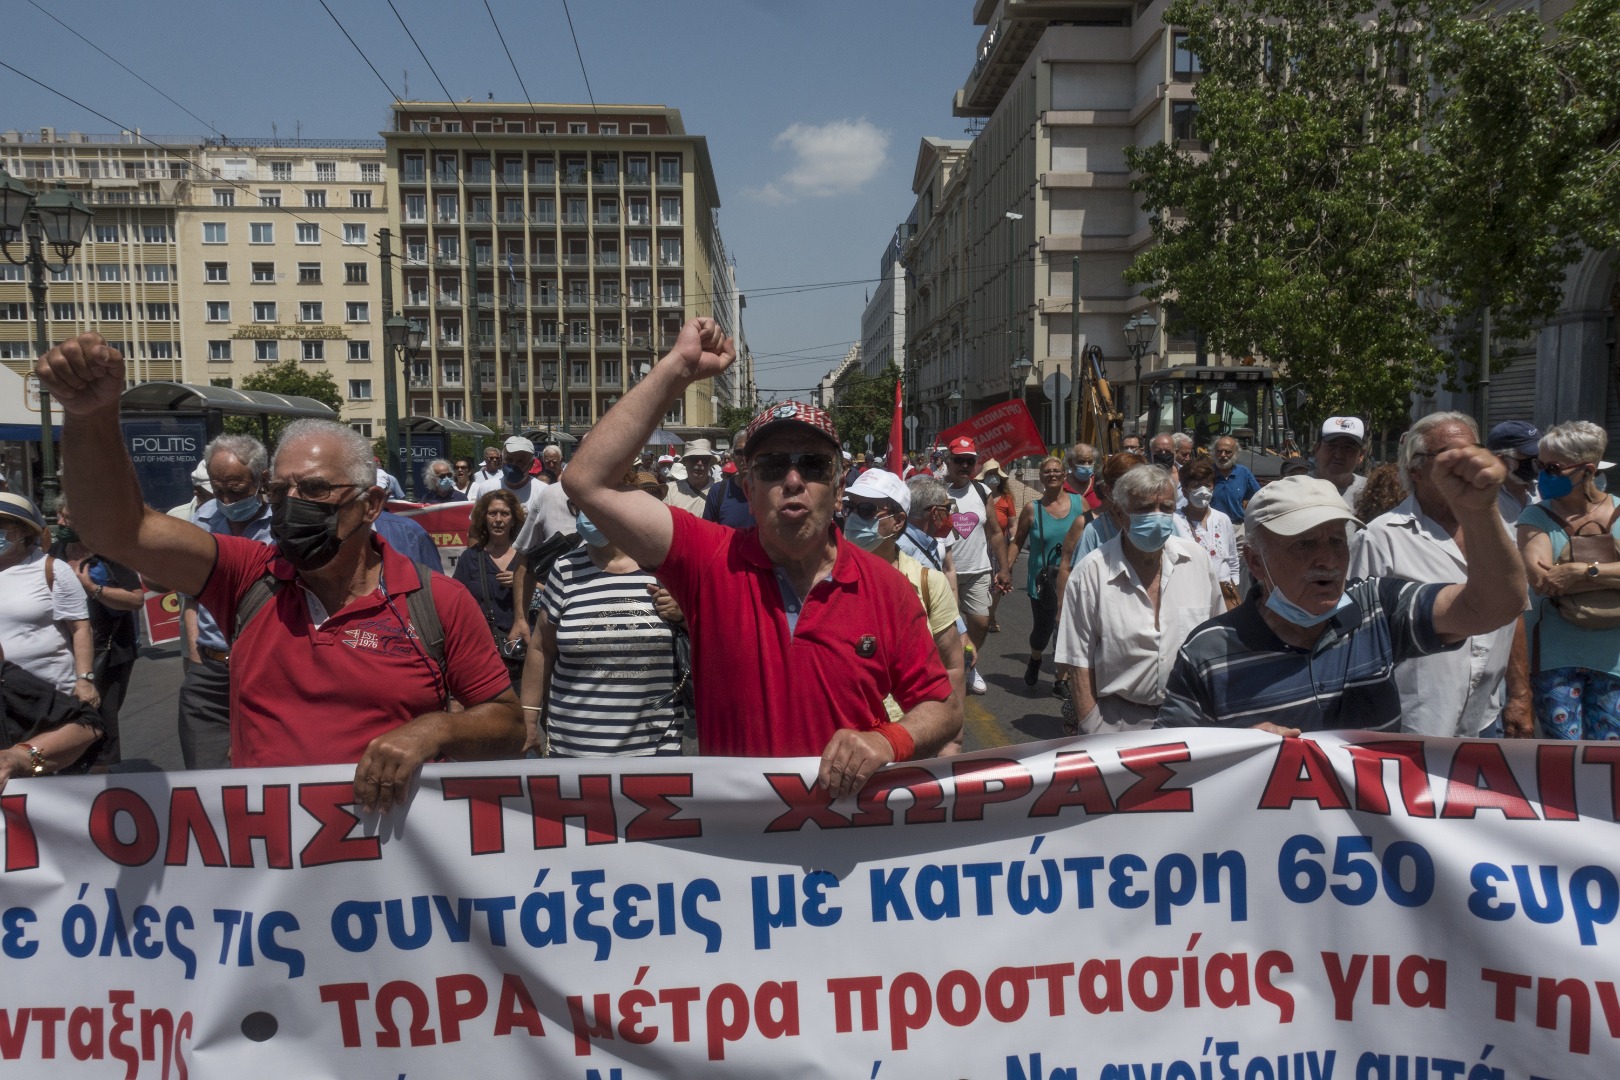 Yunanistan'da emekliler sokağa çıktı 'zam' için gösteri yaptı